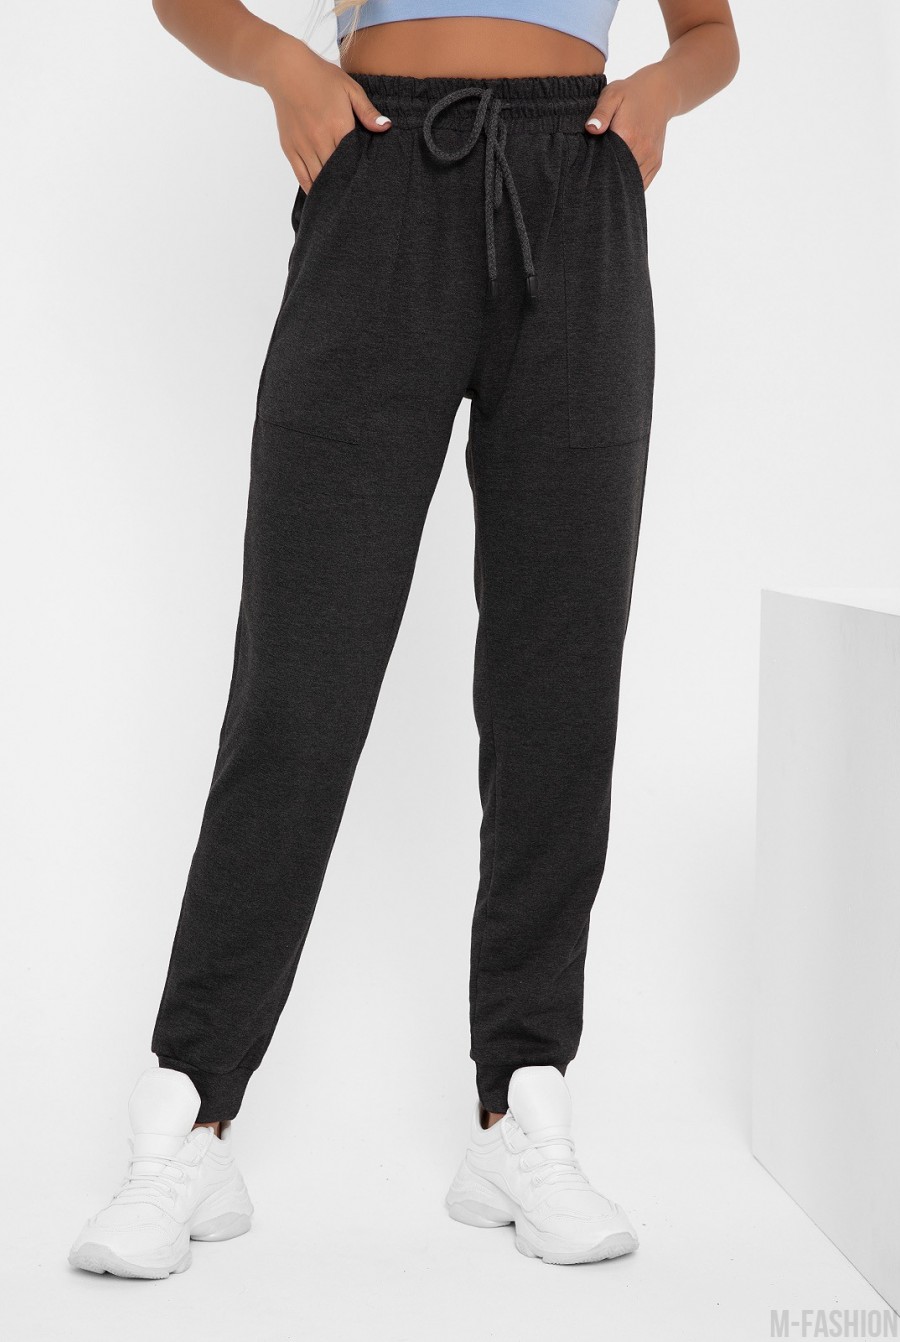 Темно-серые спортивные штаны с накладными карманами - Фото 1